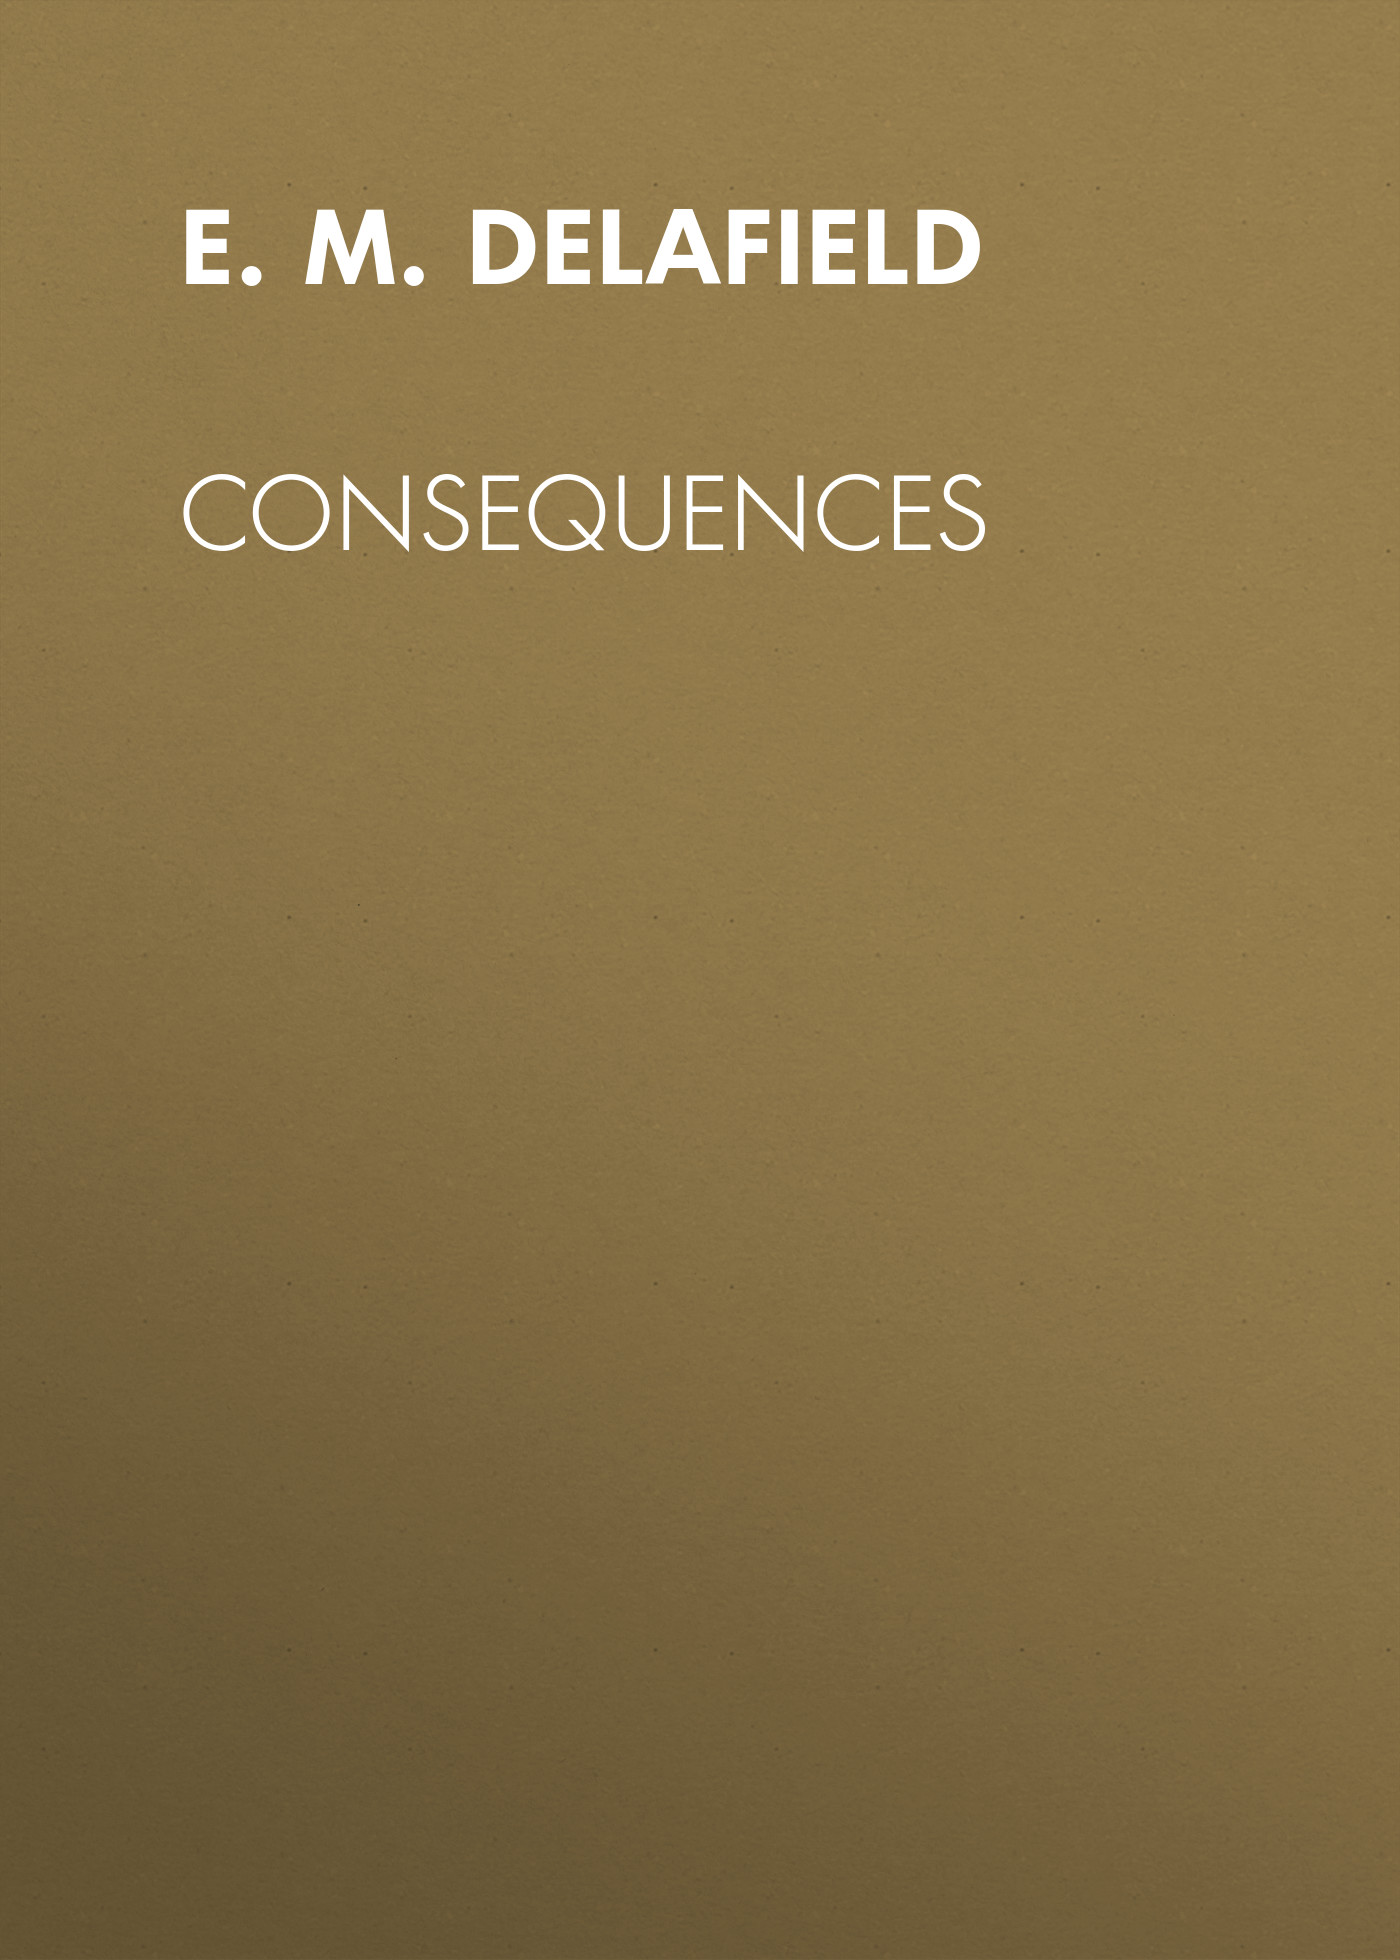 Книга Consequences из серии , созданная E. Delafield, может относится к жанру Зарубежная старинная литература, Зарубежная классика. Стоимость электронной книги Consequences с идентификатором 24547948 составляет 0 руб.